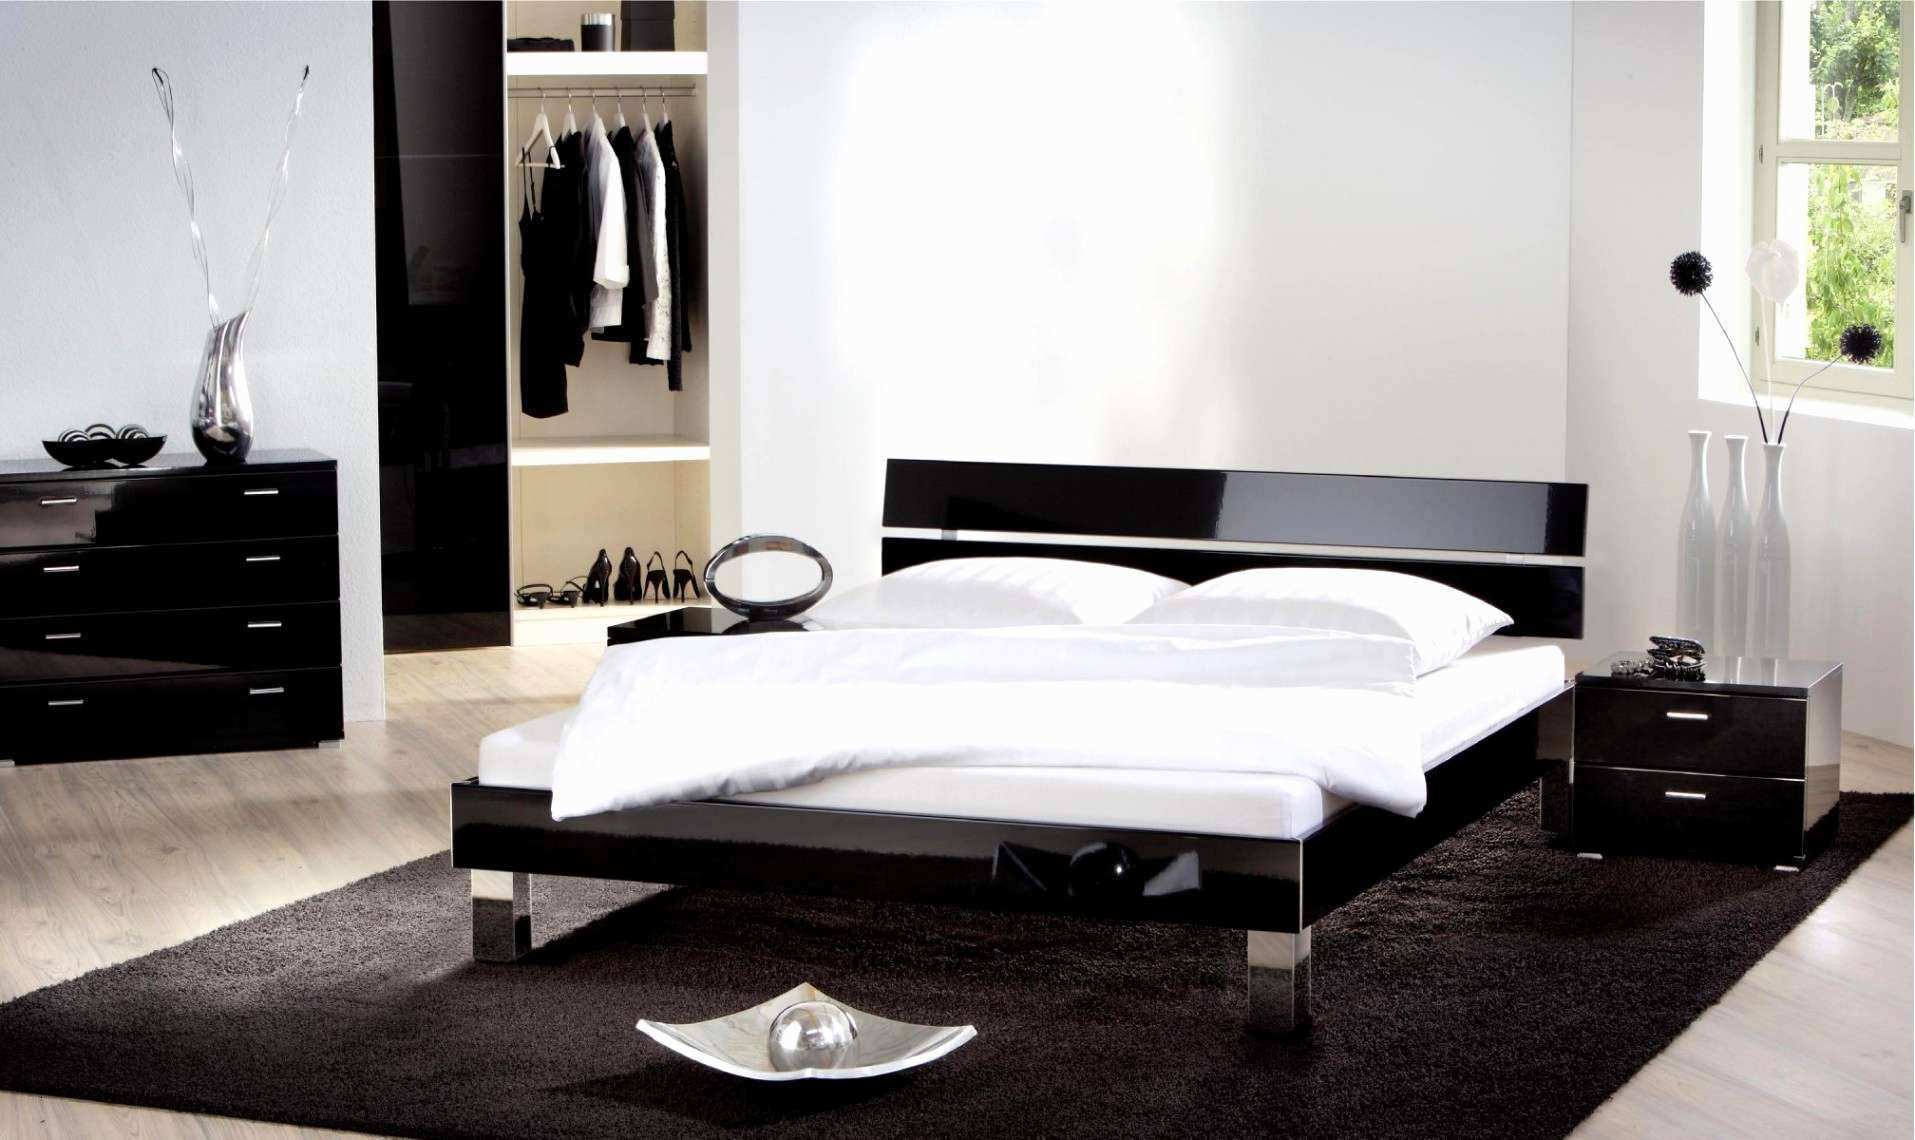 regal 70 cm breit neu luxus deko ideen diy attraktiv regal schlafzimmer 0d of regal 70 cm breit